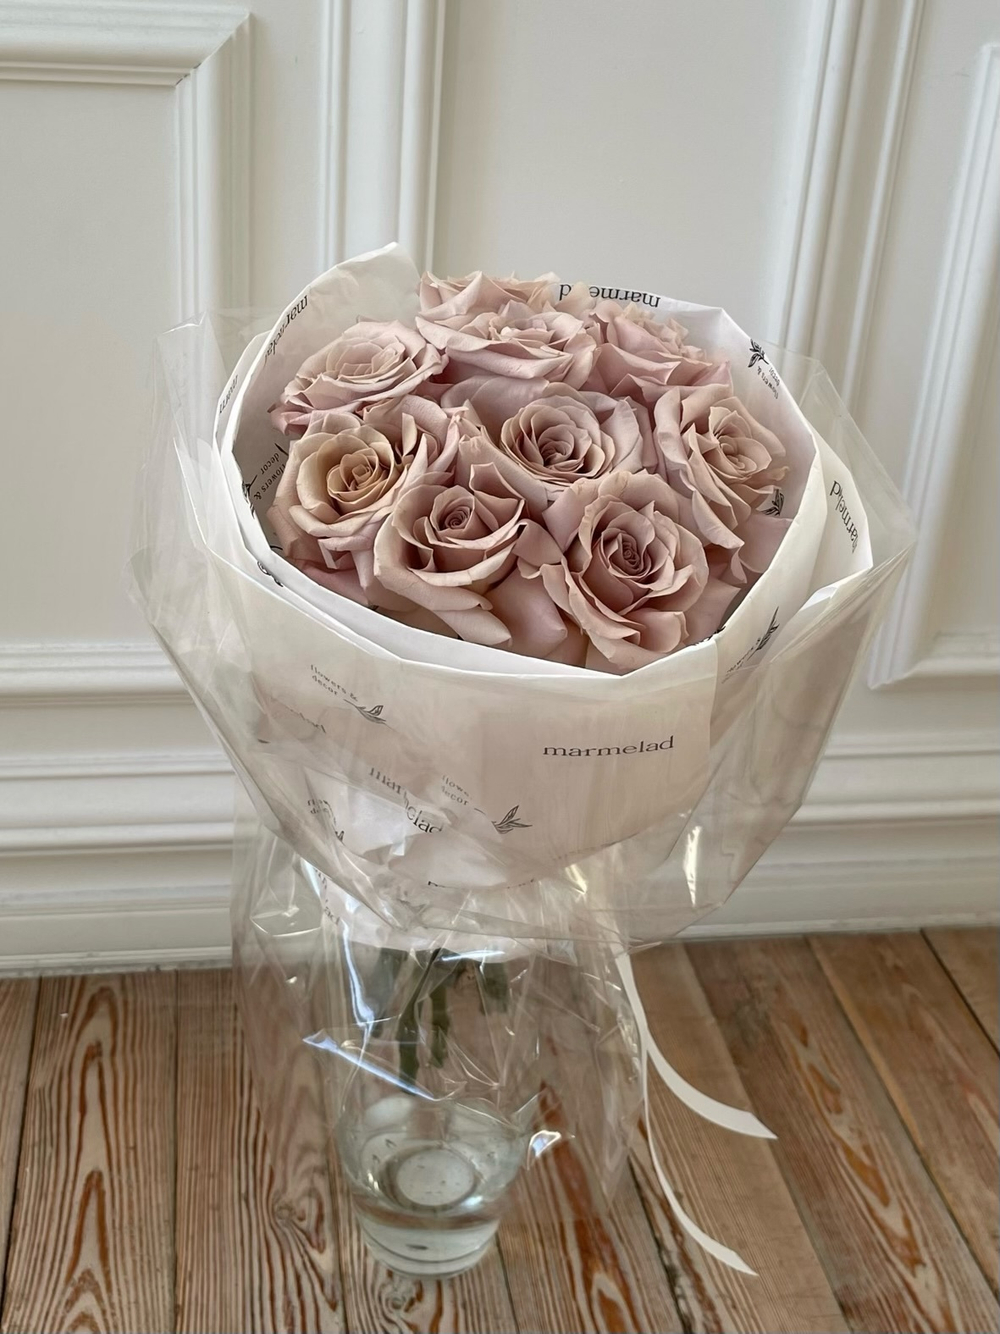 Букет 9 роз в кремовом оттенке в оформлении